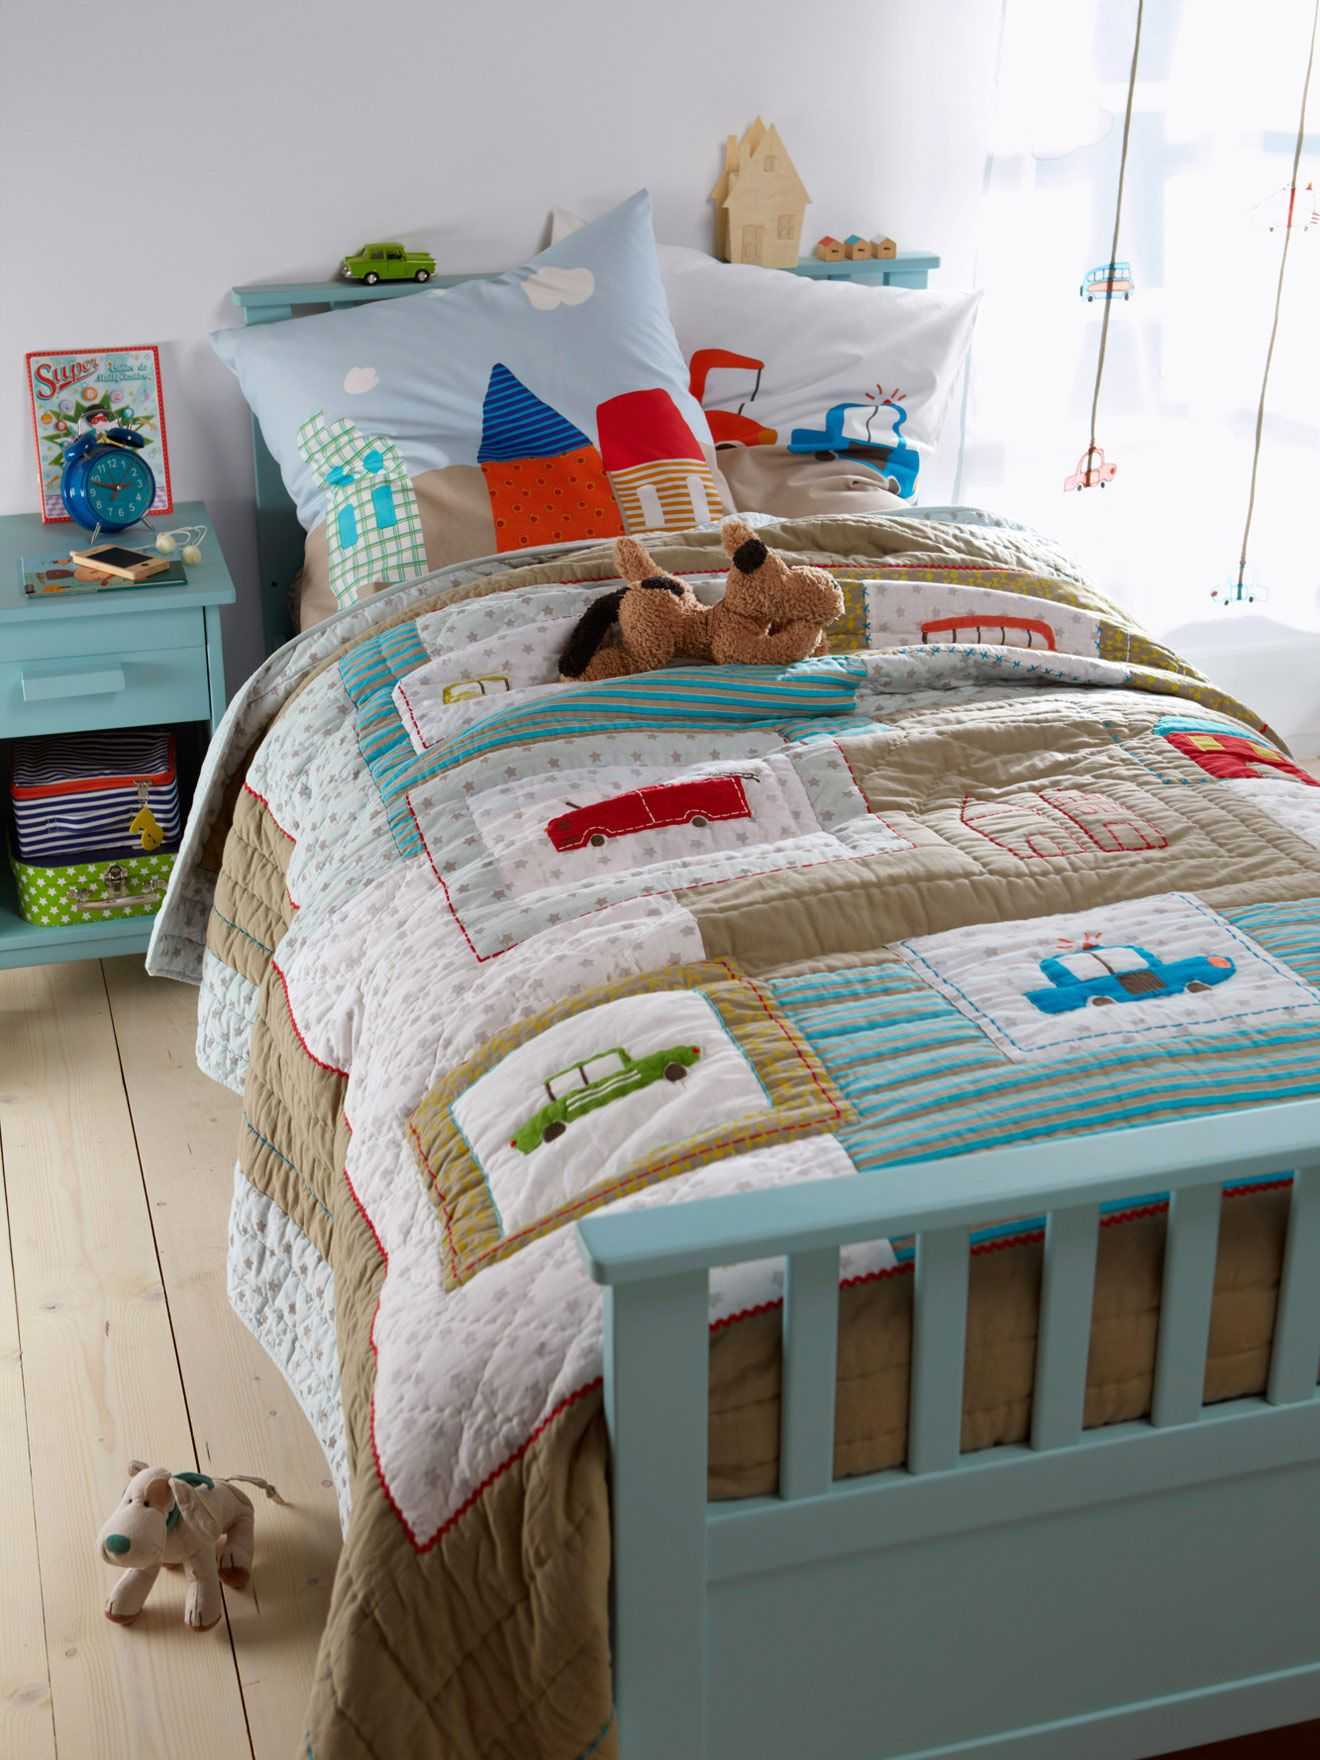 Текстиль для детской комнаты: постельное, подушки, одеяла. советы как выбрать